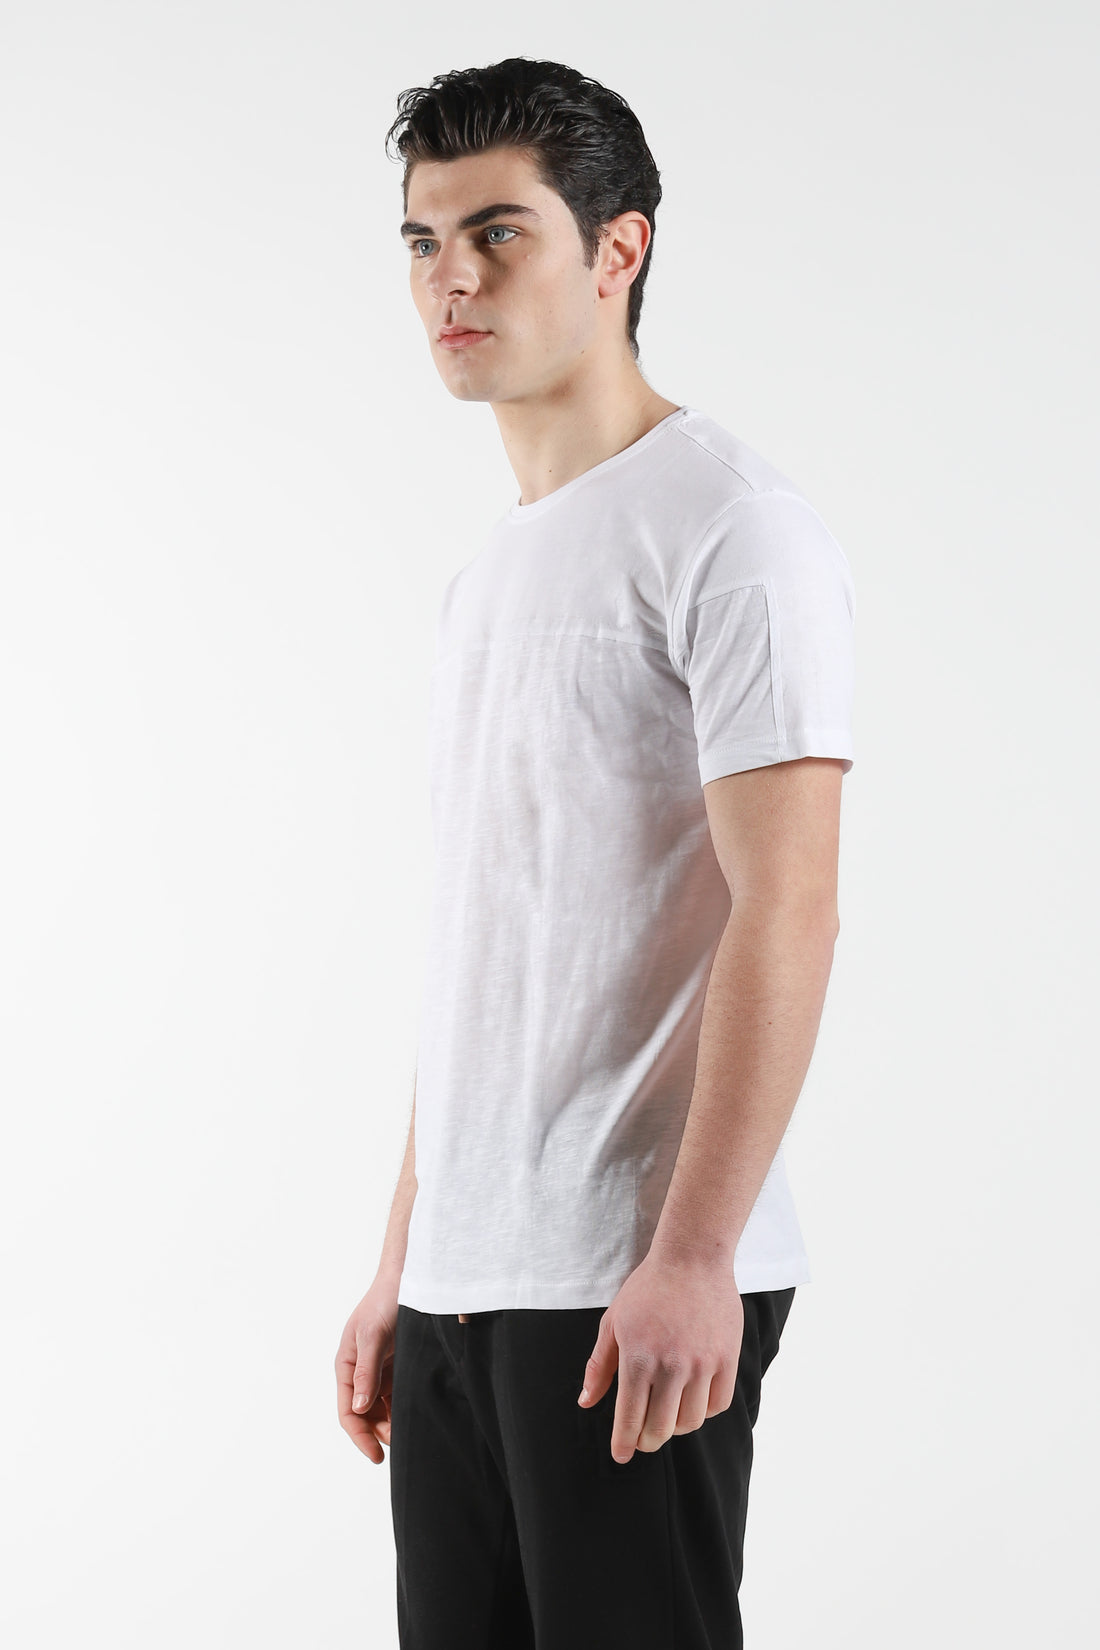 T-Shirt giro collo con stampa colore su colore - Bianco